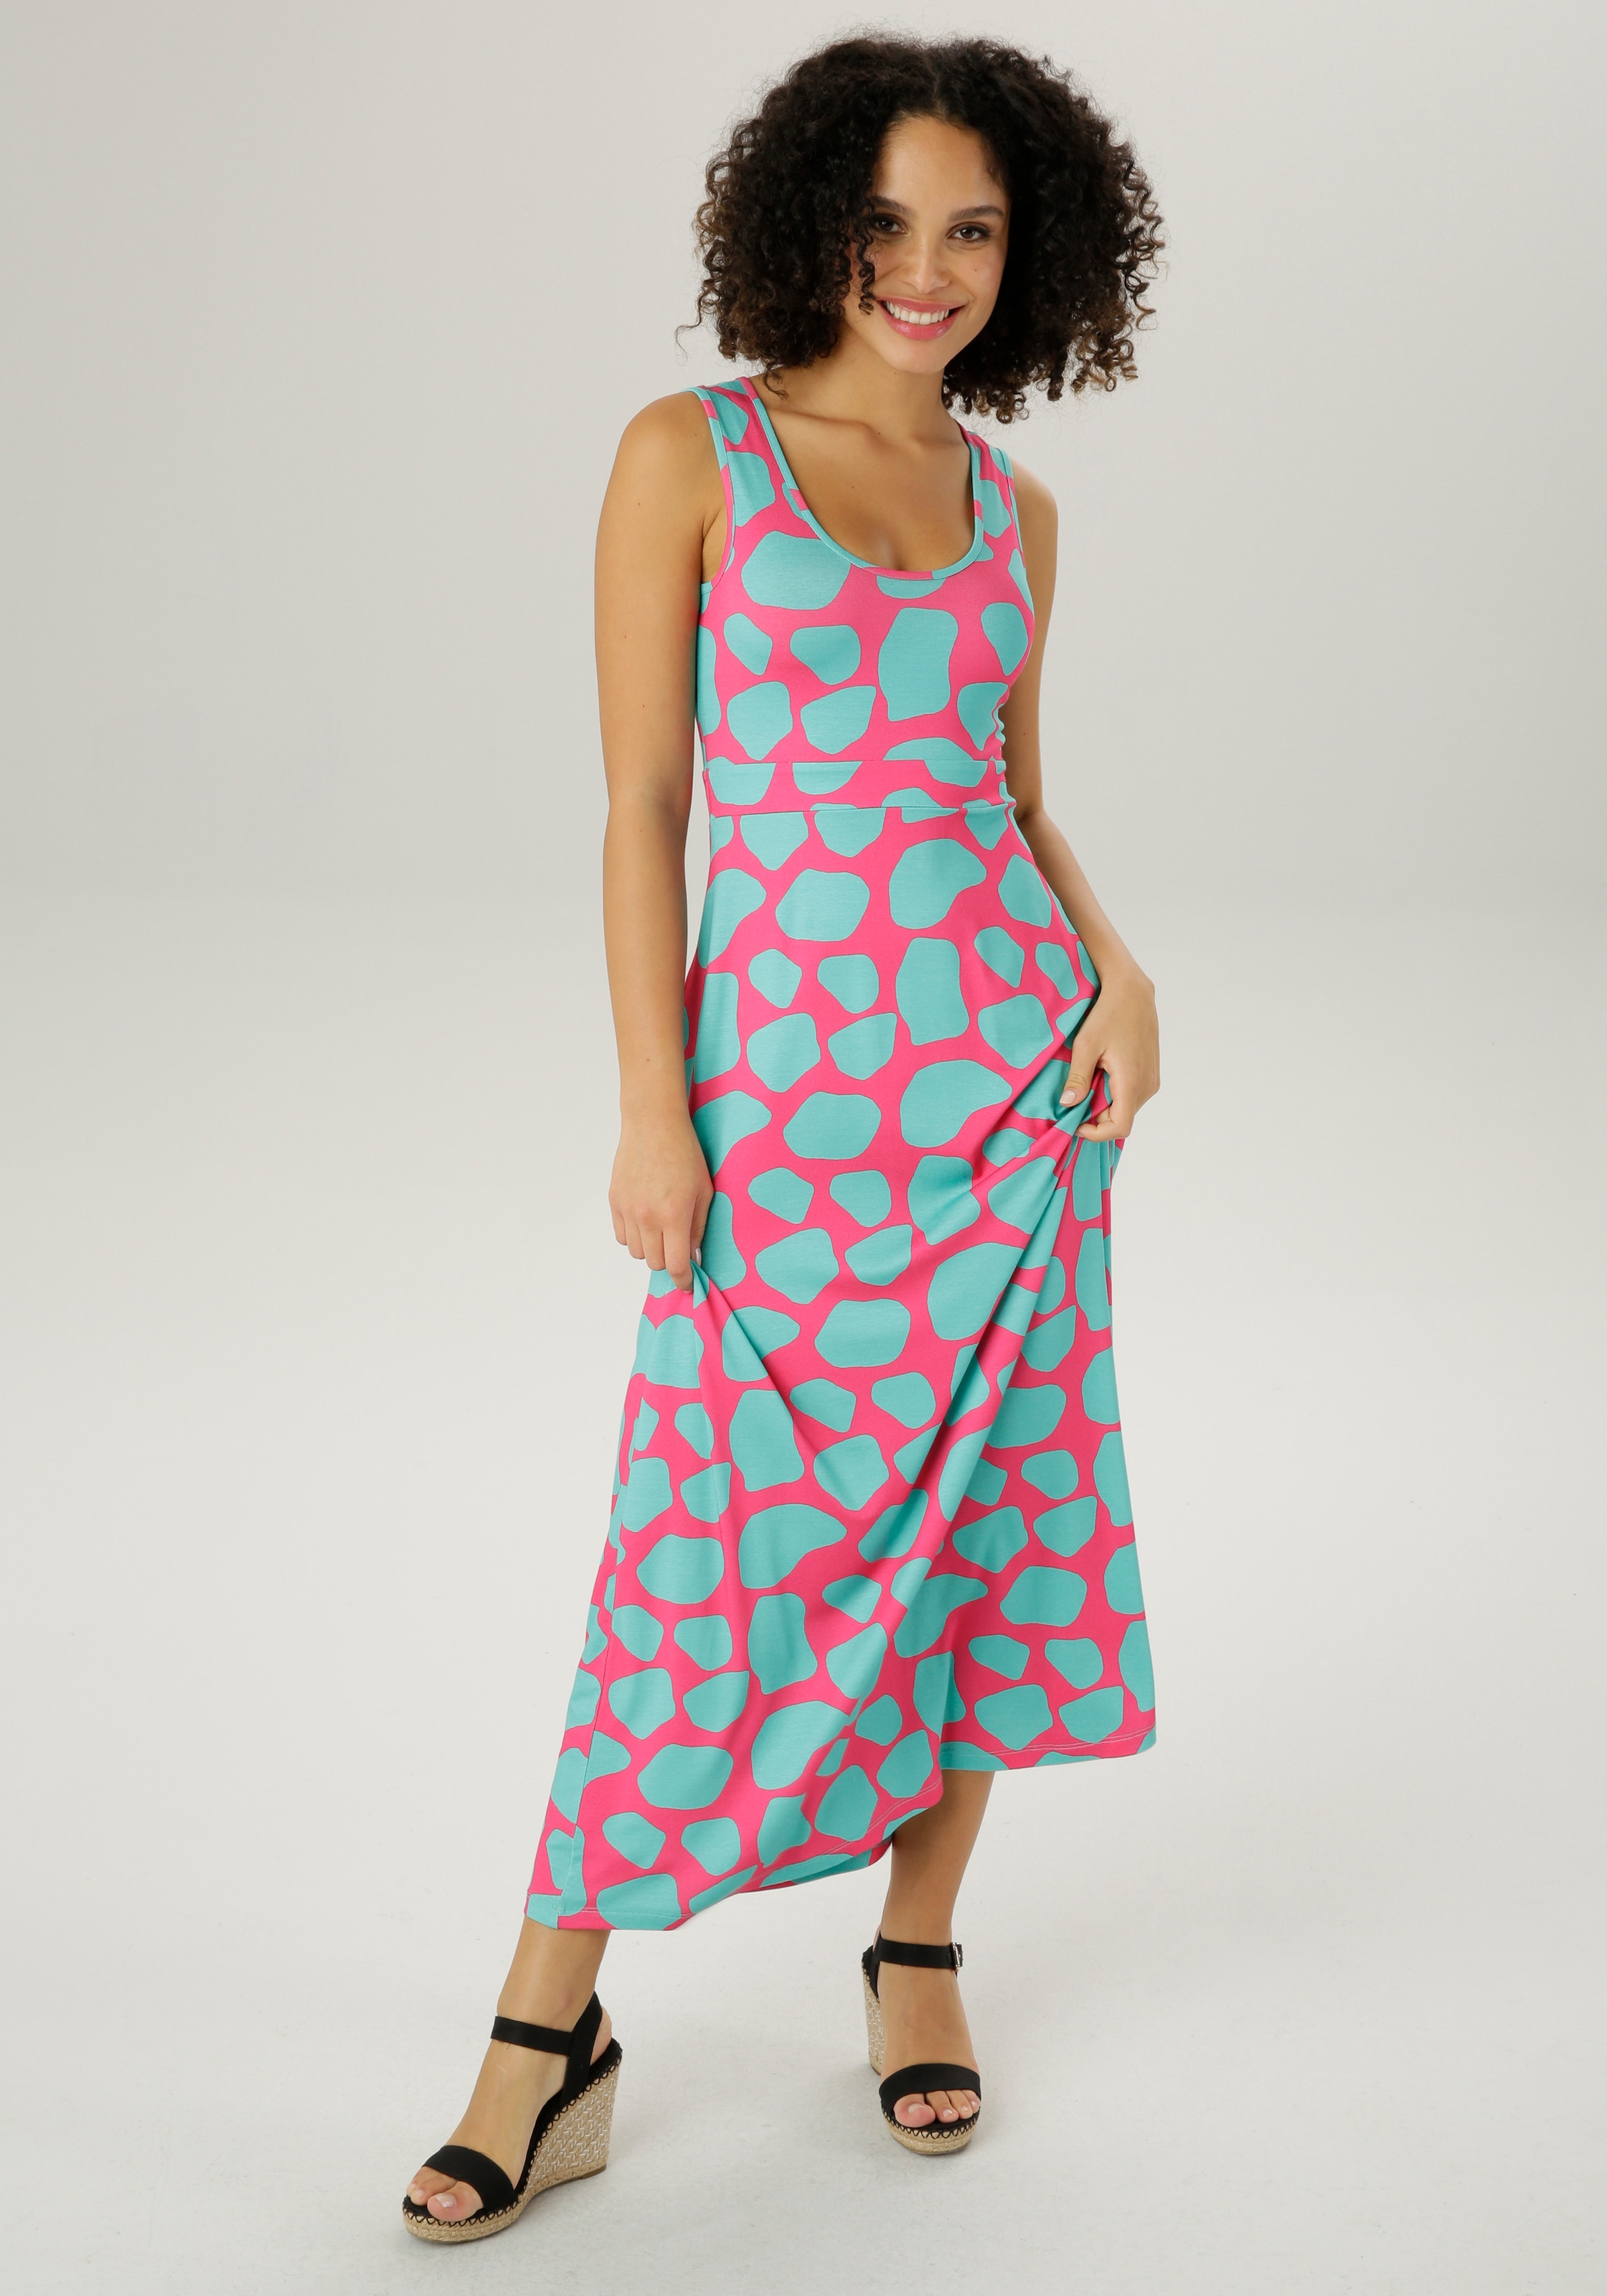 Druck mit Sommerkleid, farbintensivem Aniston CASUAL extravagantem, shoppen